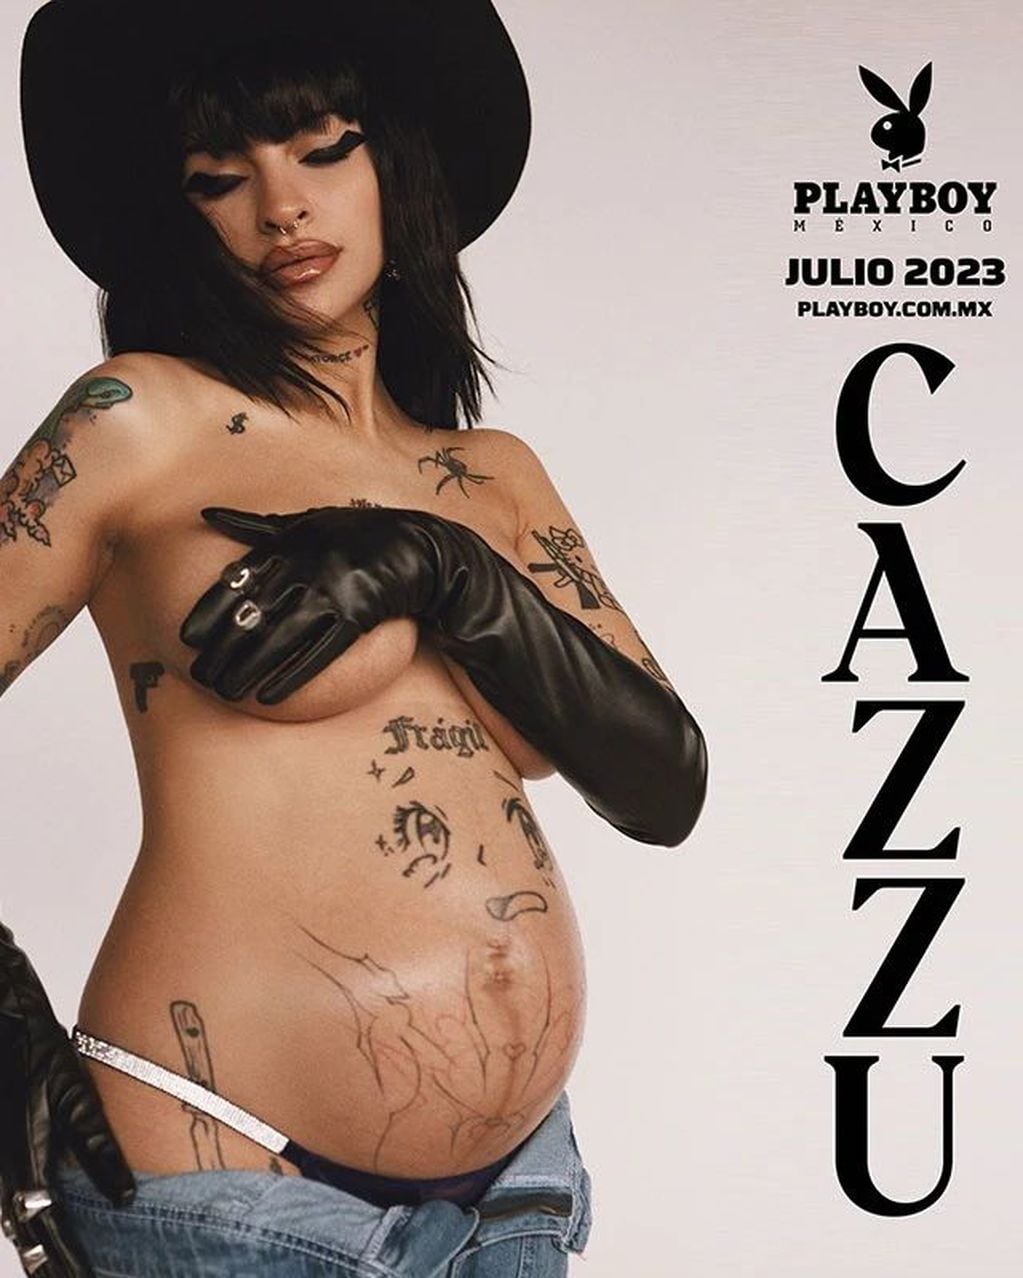 Cazzu posó embarazada para Playboy y causó controversia con su sesión de fotos